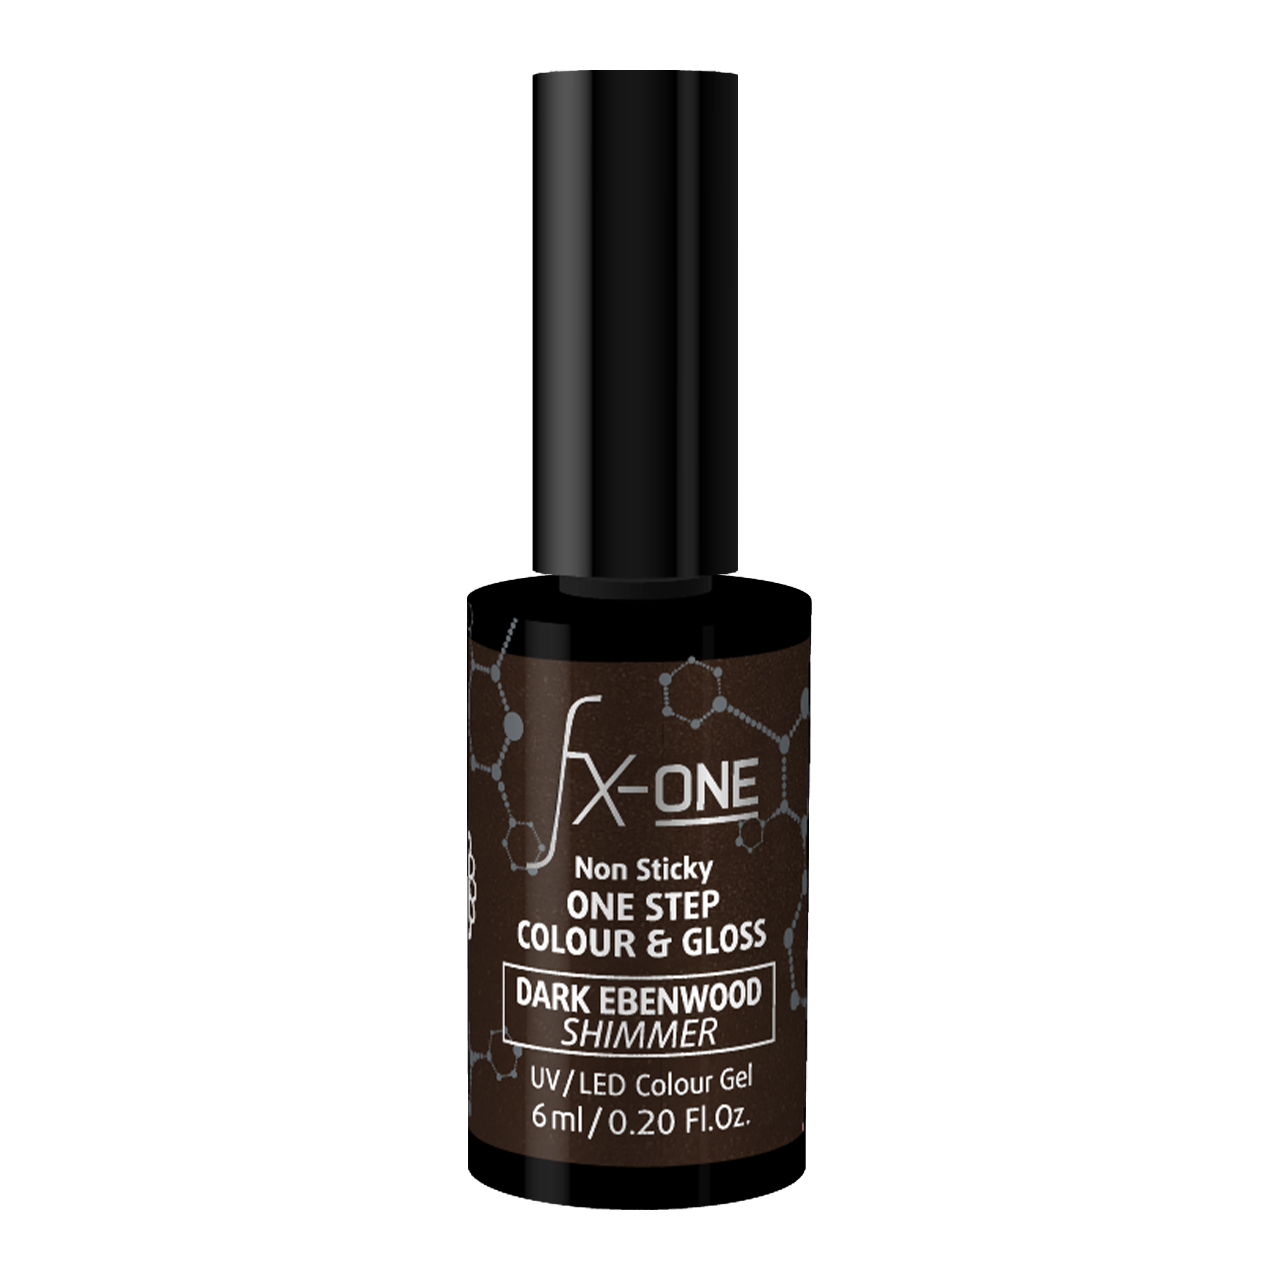 FX-ONE Colour & Gloss Dark Ebenwood Shimmer